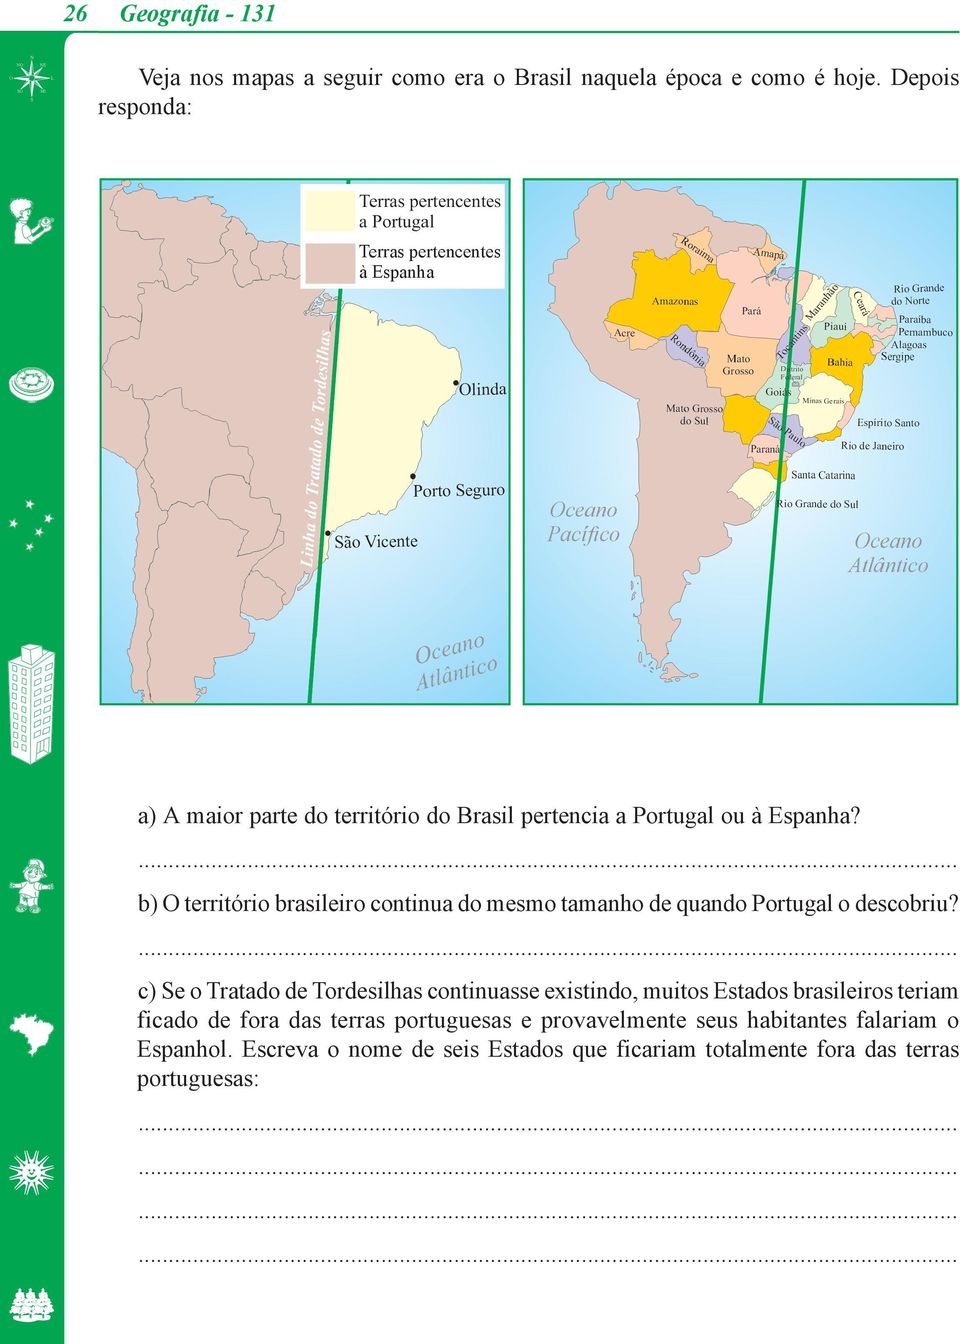 b) O território brasileiro continua do mesmo tamanho de quando Portugal o descobriu?